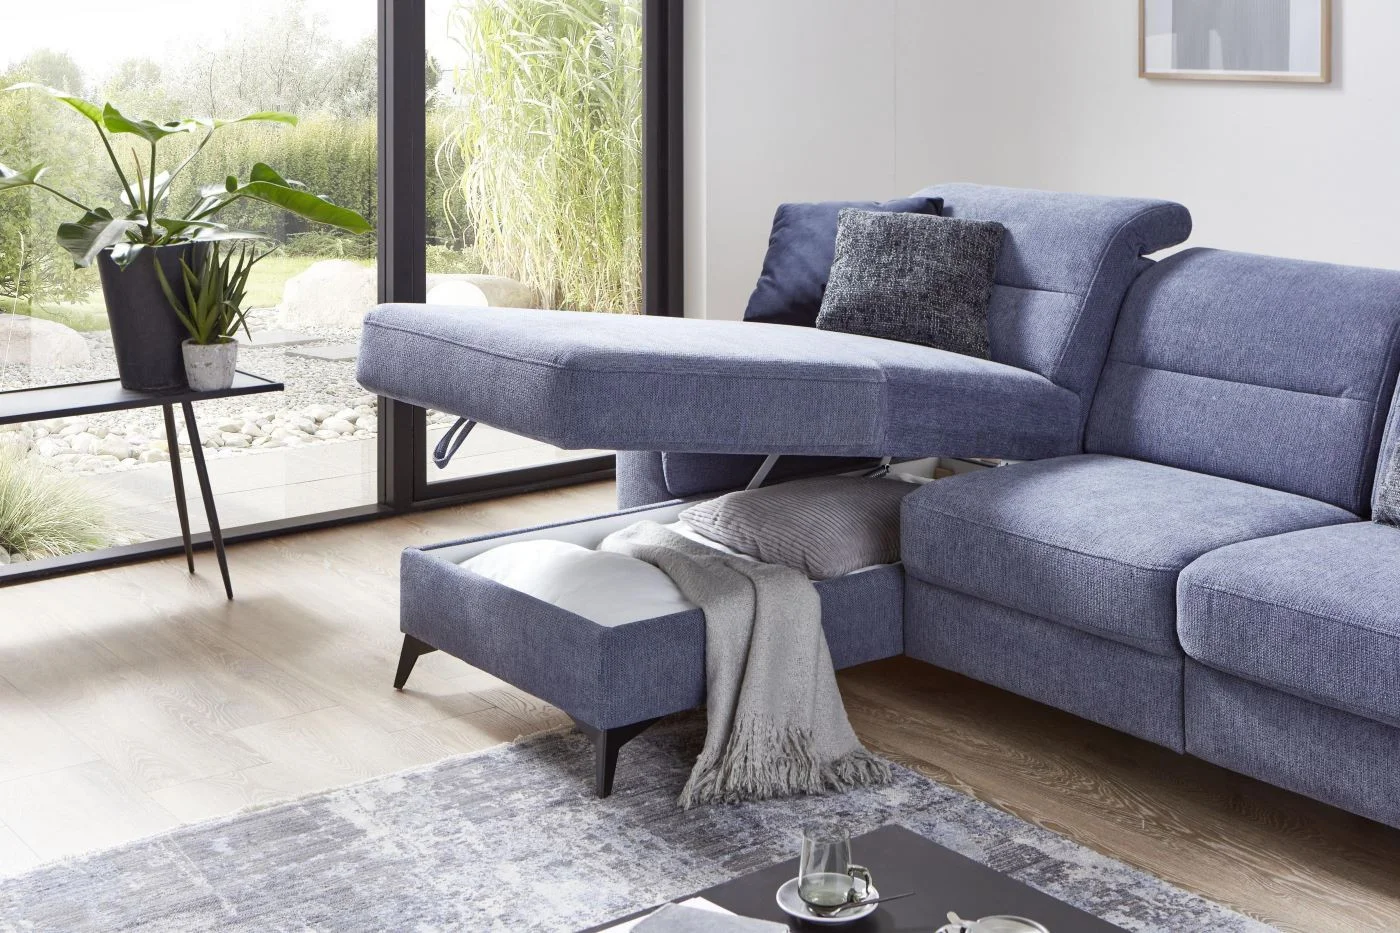 Moderná obývacia izba sa nezaobíde bez kvalitnej pohodlnej sedačky.